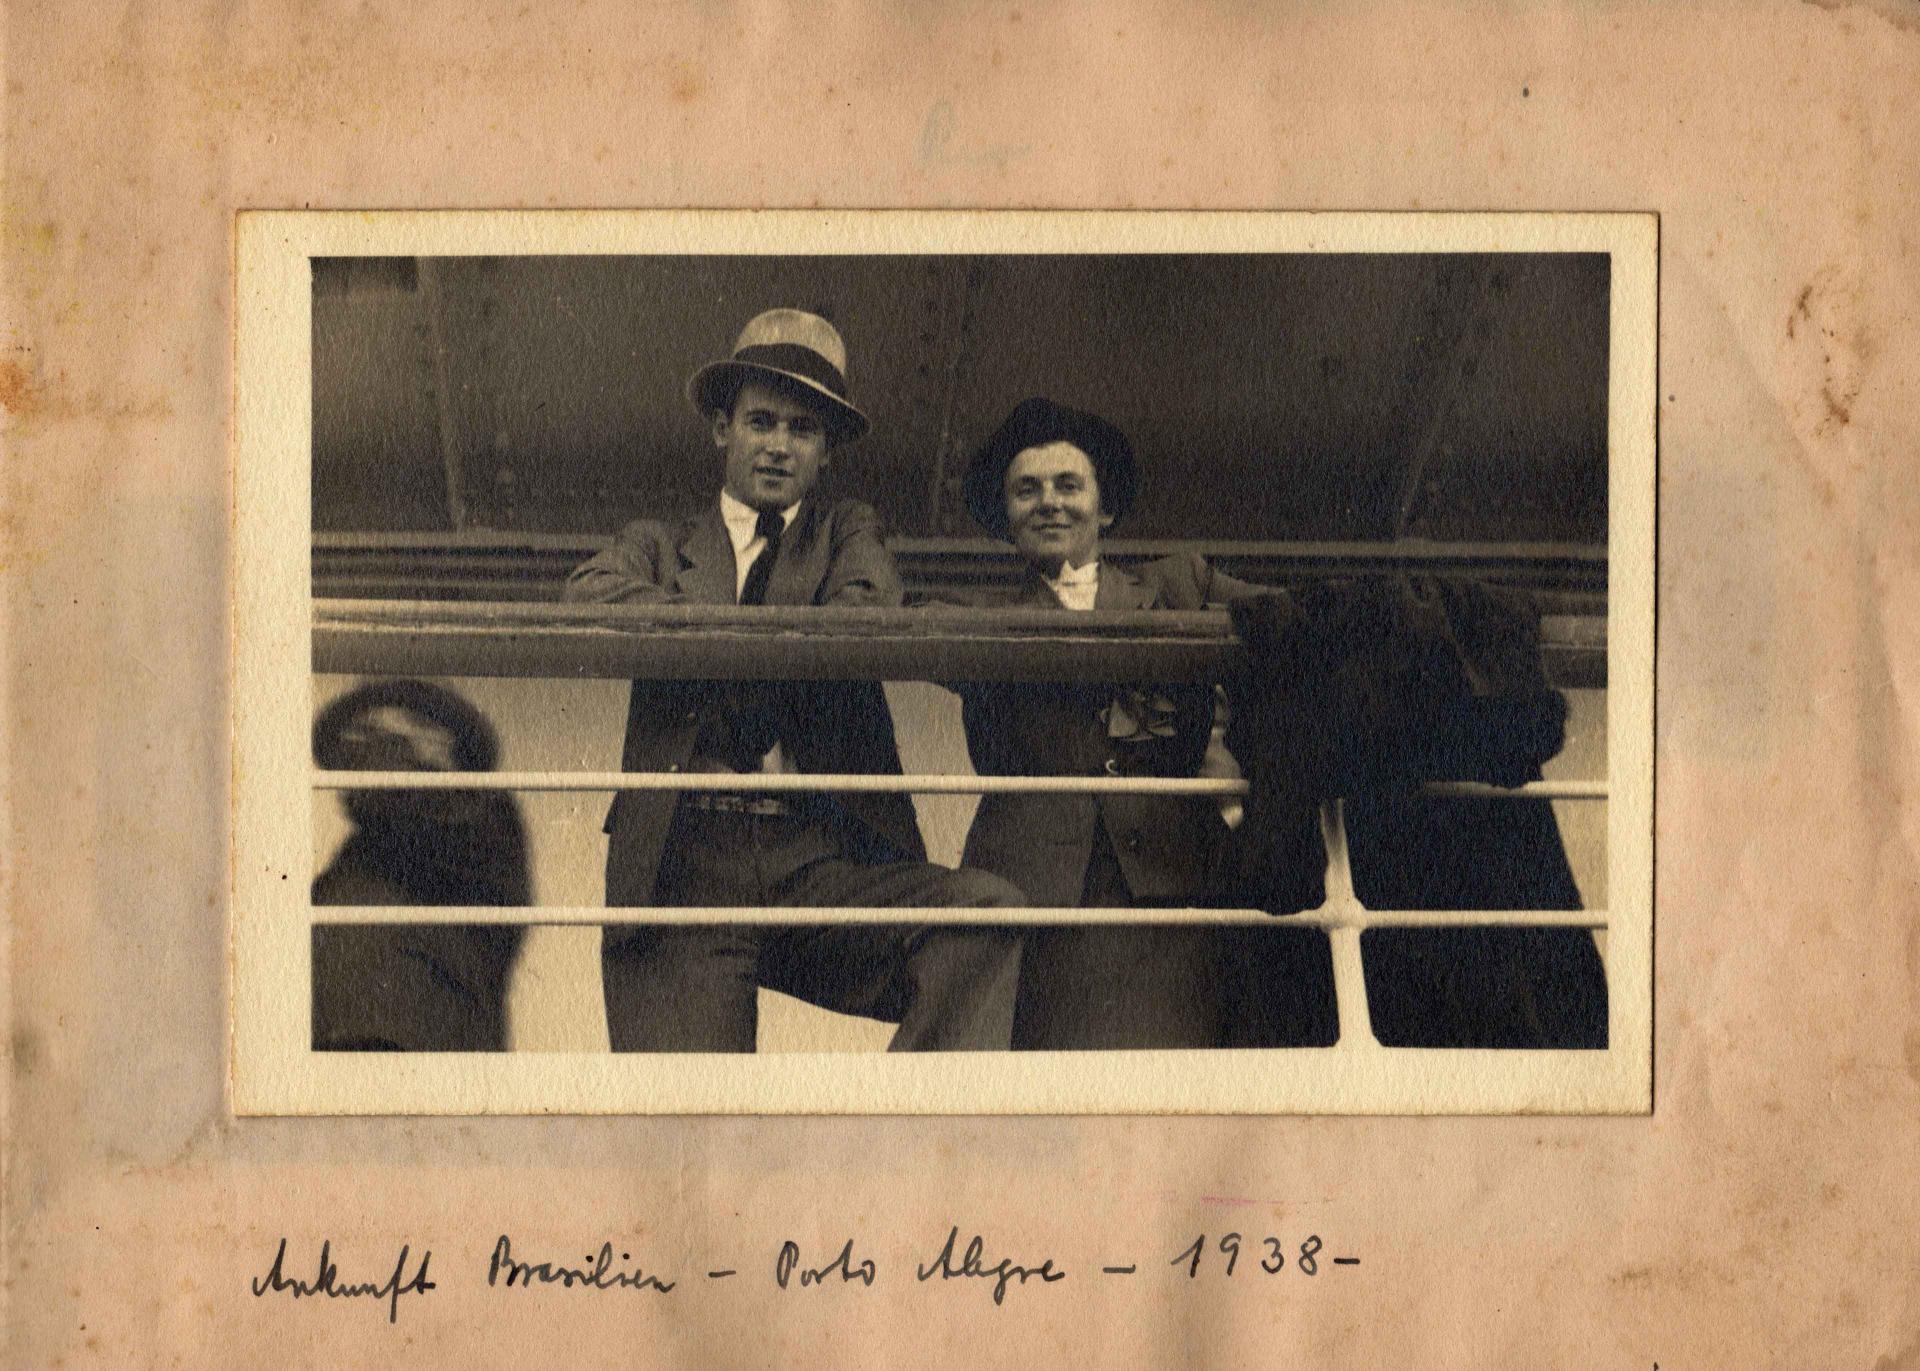 Schwarz-weiß Foto von einem Mann und einer Frau, die an einer Schiffsrehling lehnen, darunter handschriftlich: Ankunft Brasilien - Porto Alegre - 1938.